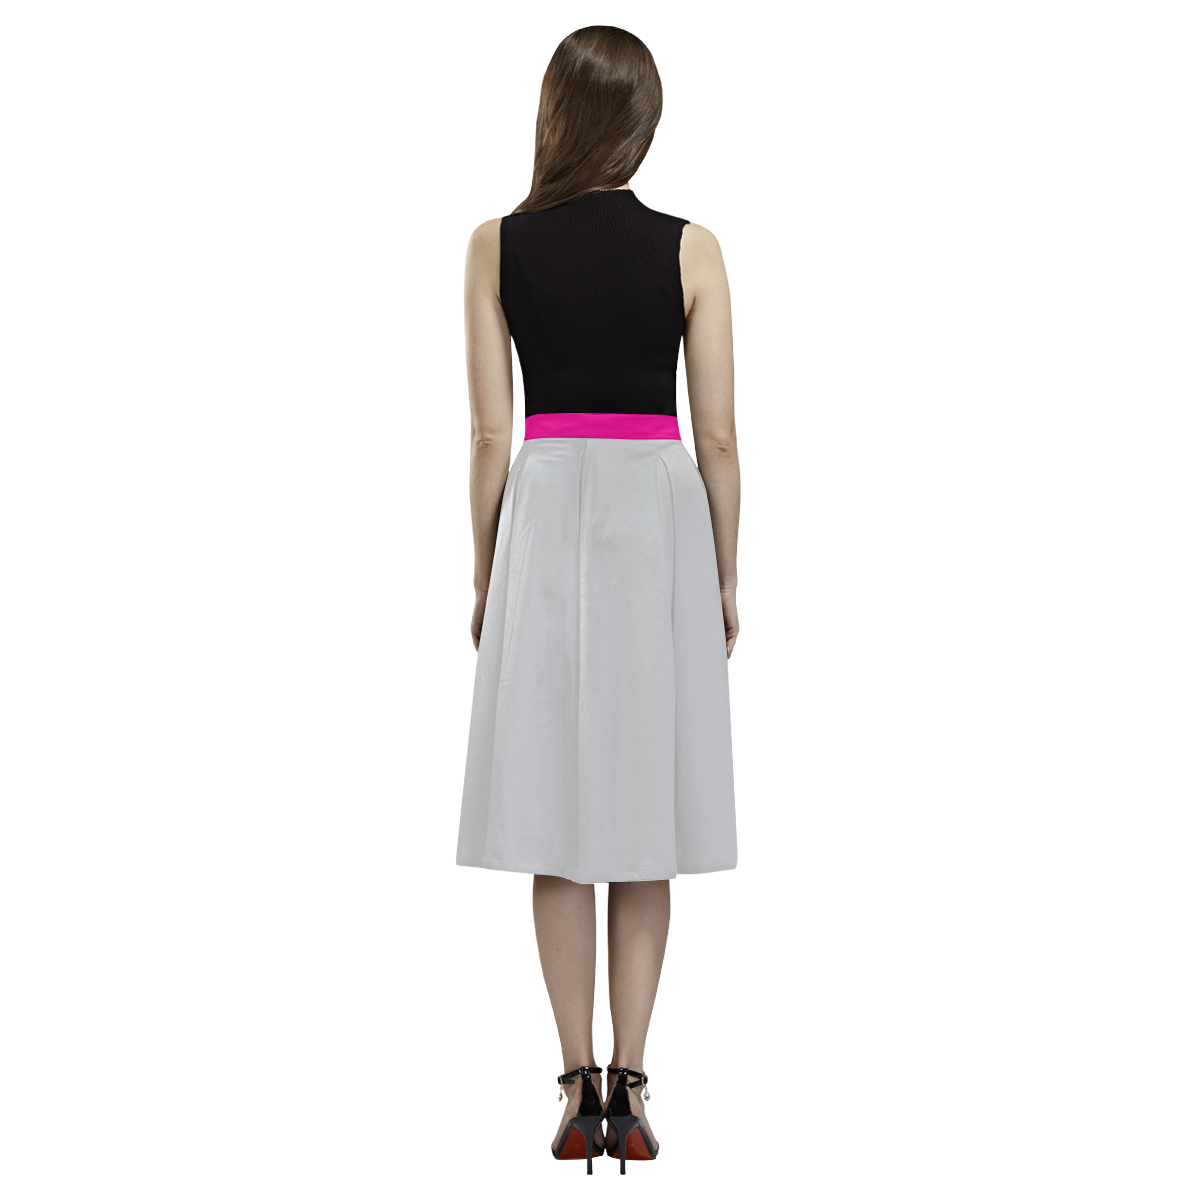 Luxury ladies Skirt : with Floral art / brown Aoede Crepe Skirt (Model D16)